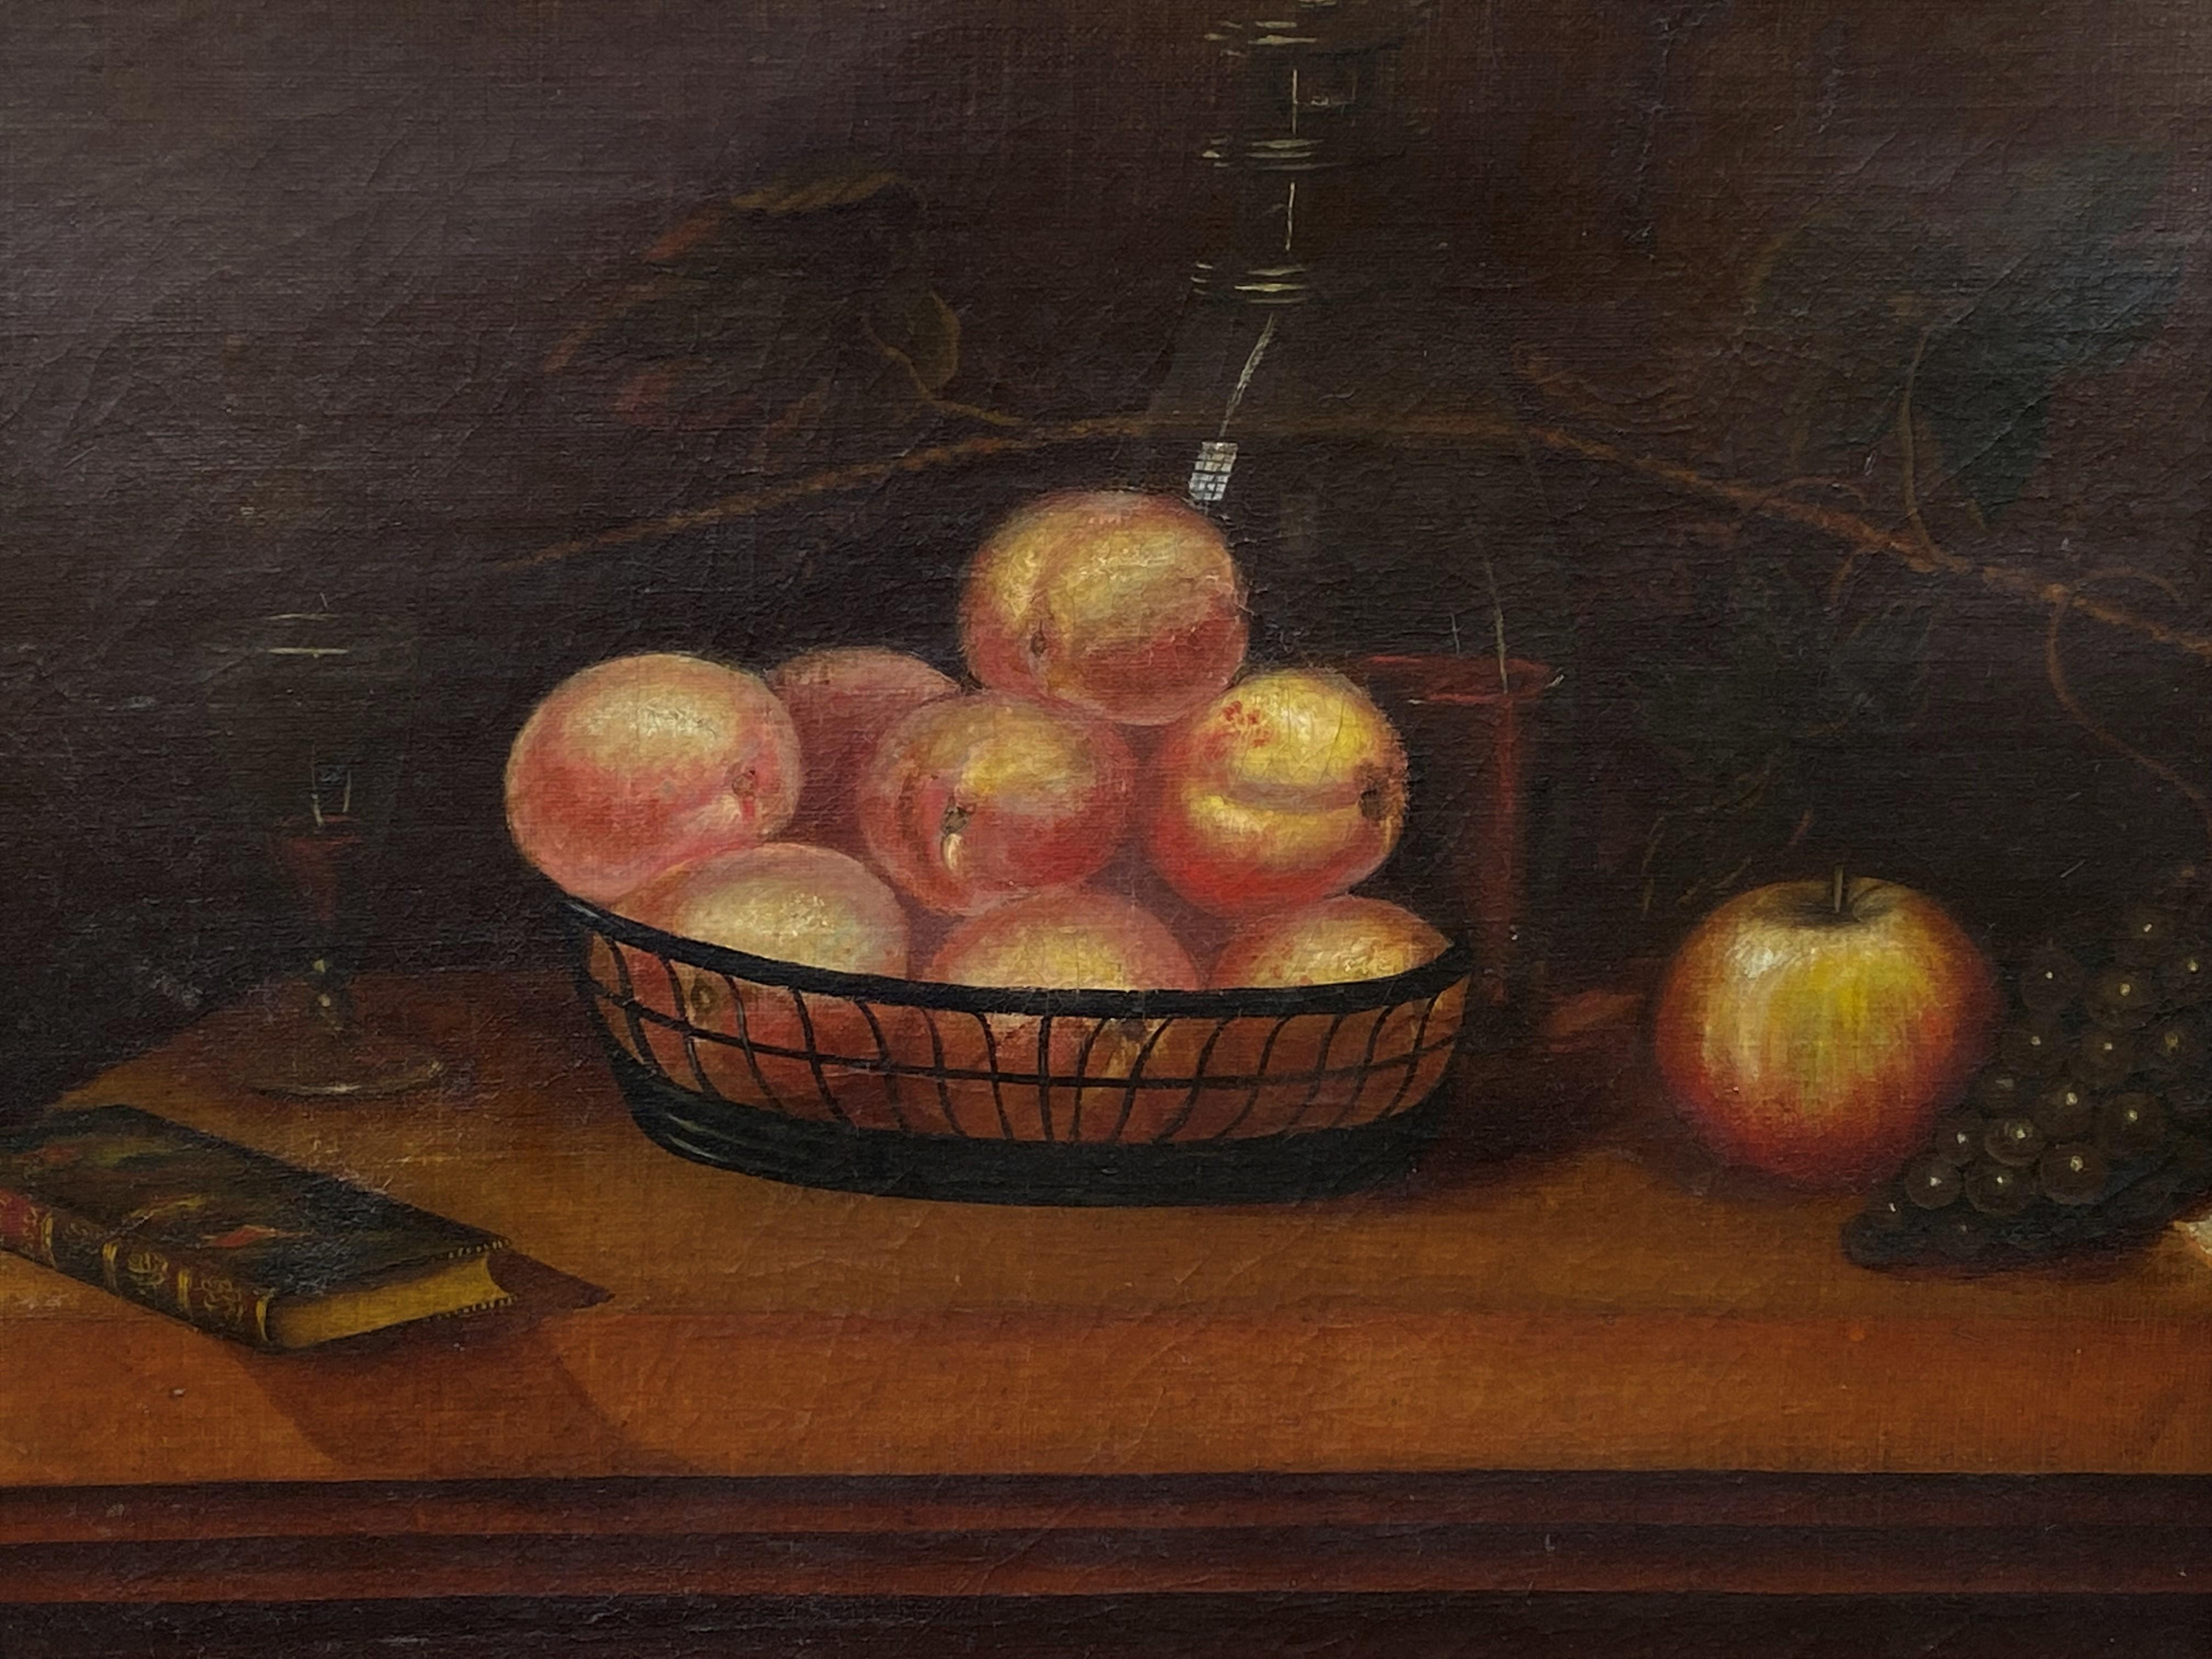 Amerikanische amerikanische Schultischplatte, Stillleben mit Obst, um 1875-90 – Painting von Unknown